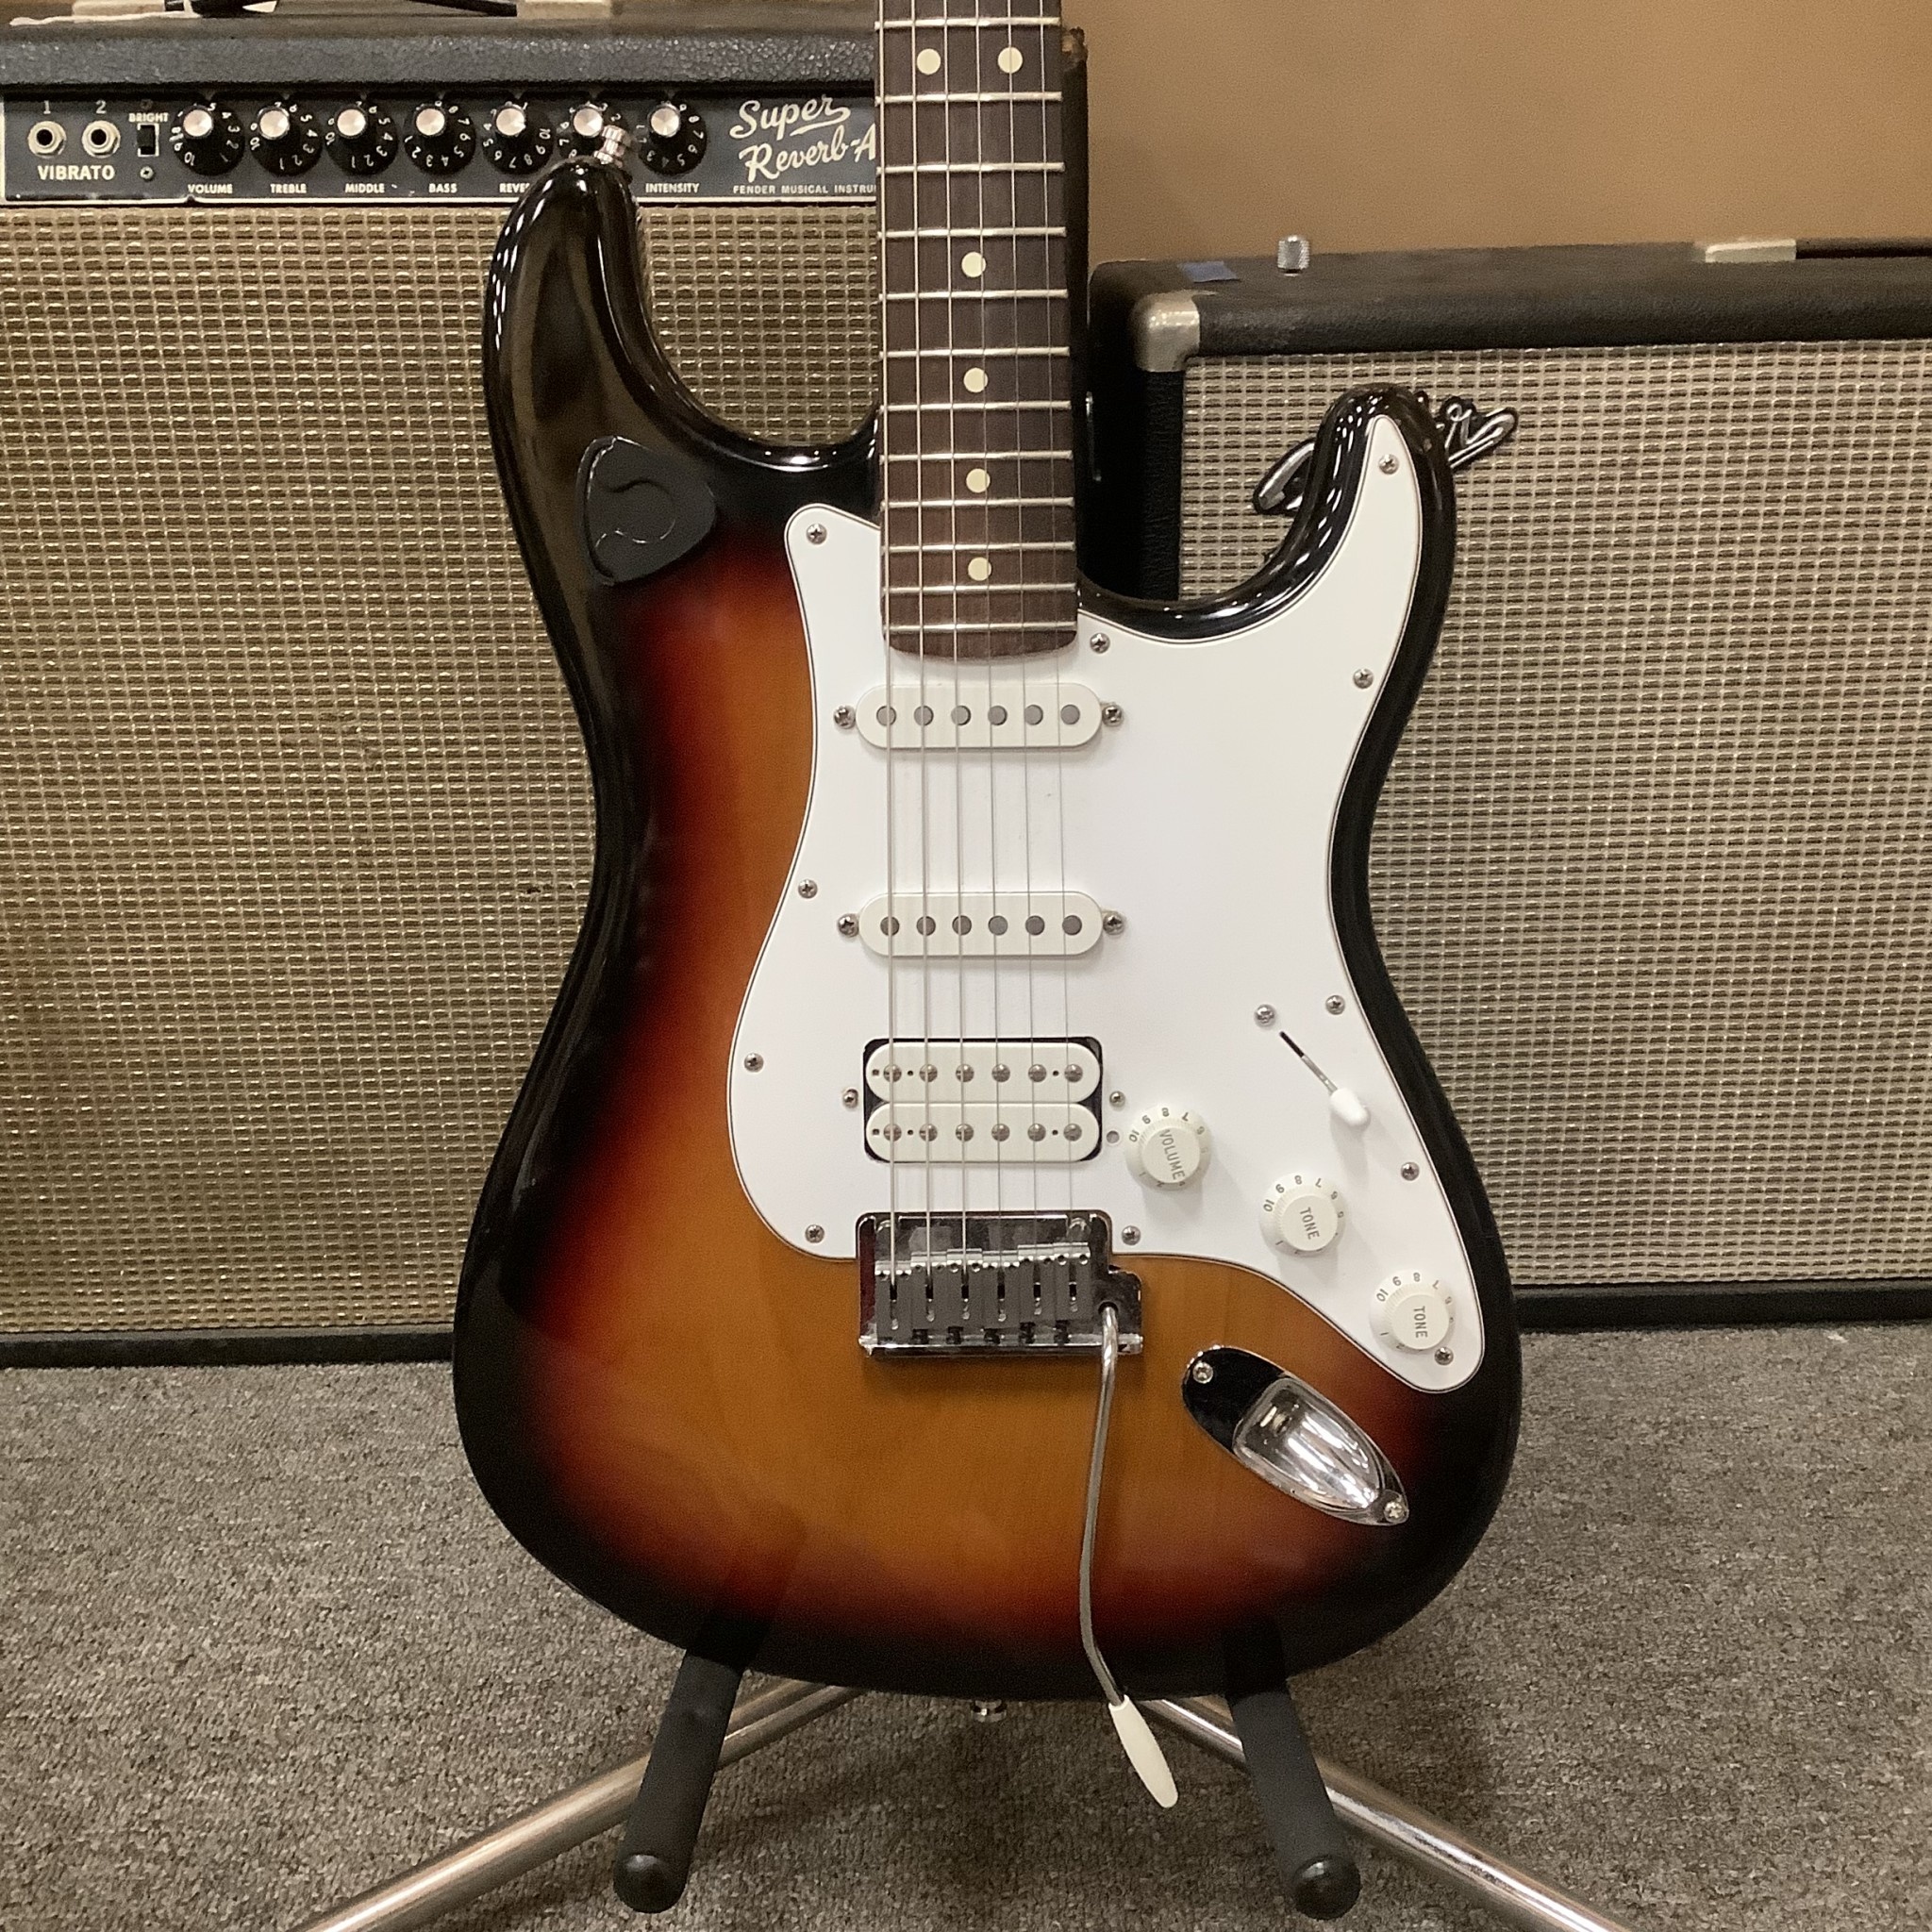 Fender USA Stratocaster